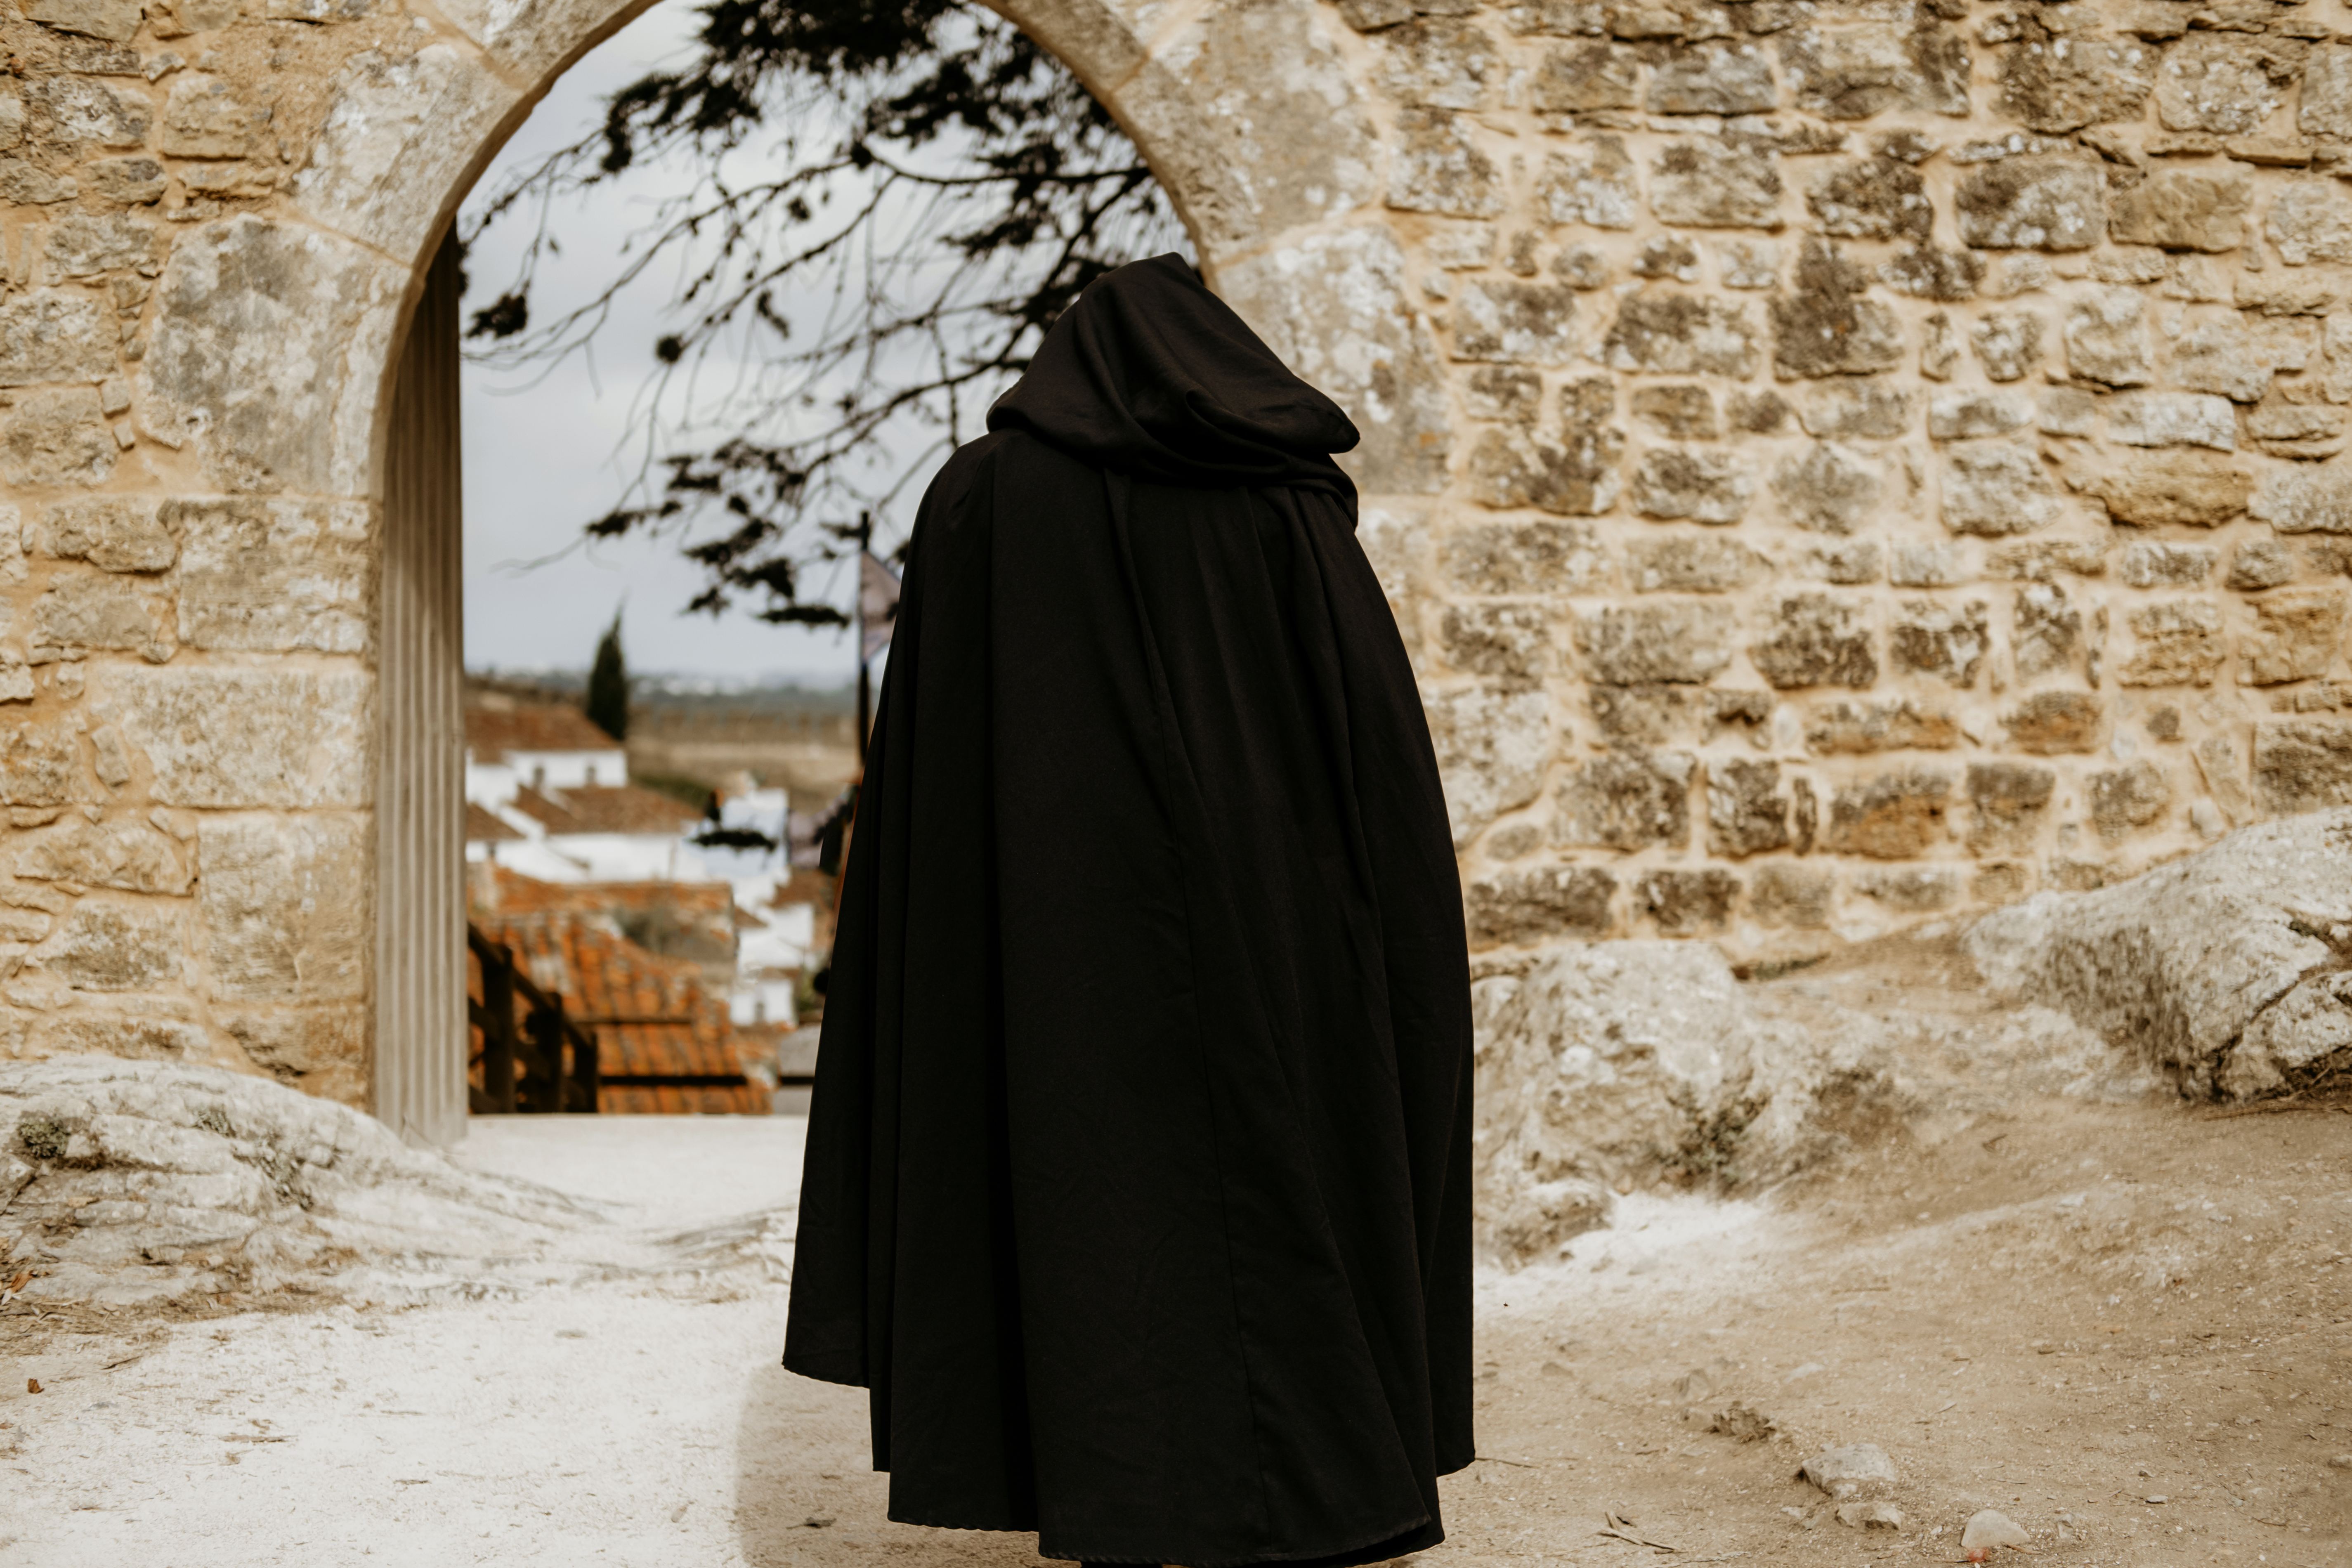 Man wearing long cloak walking on the street | Source: Shutterstock.com